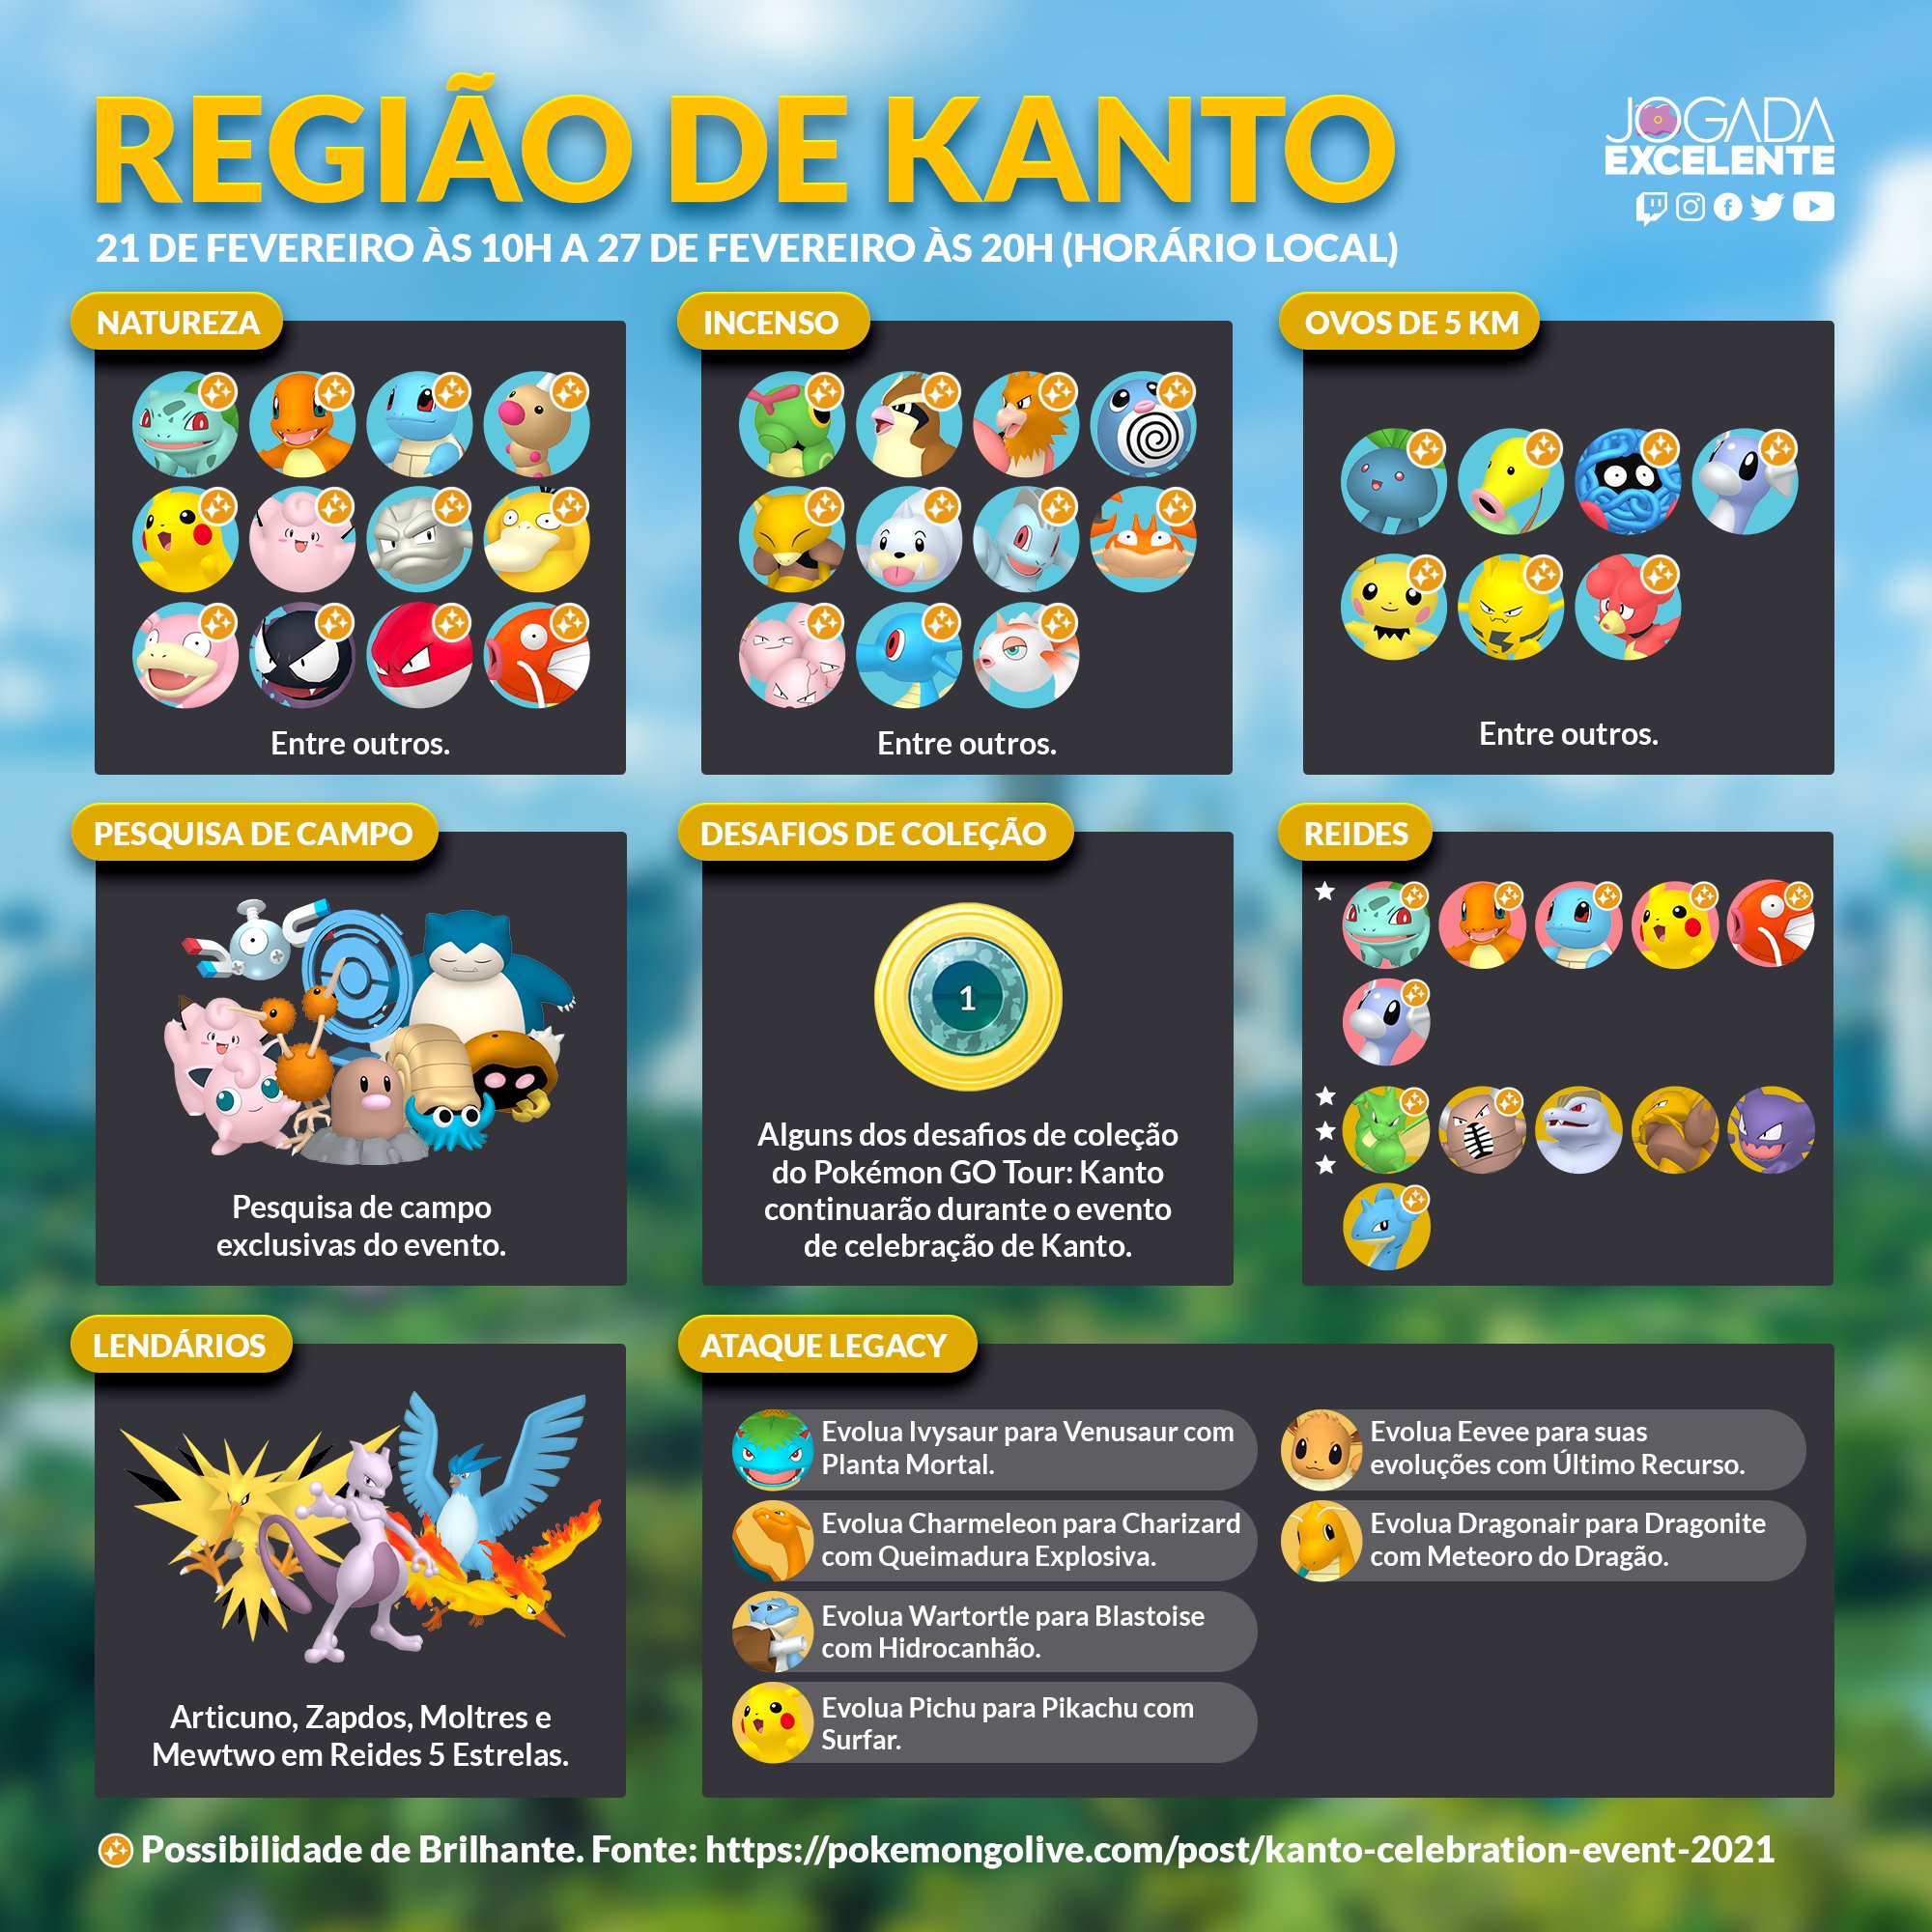 Tudo o que vocês precisam saber antes do Pokémon GO Tour: Kanto!